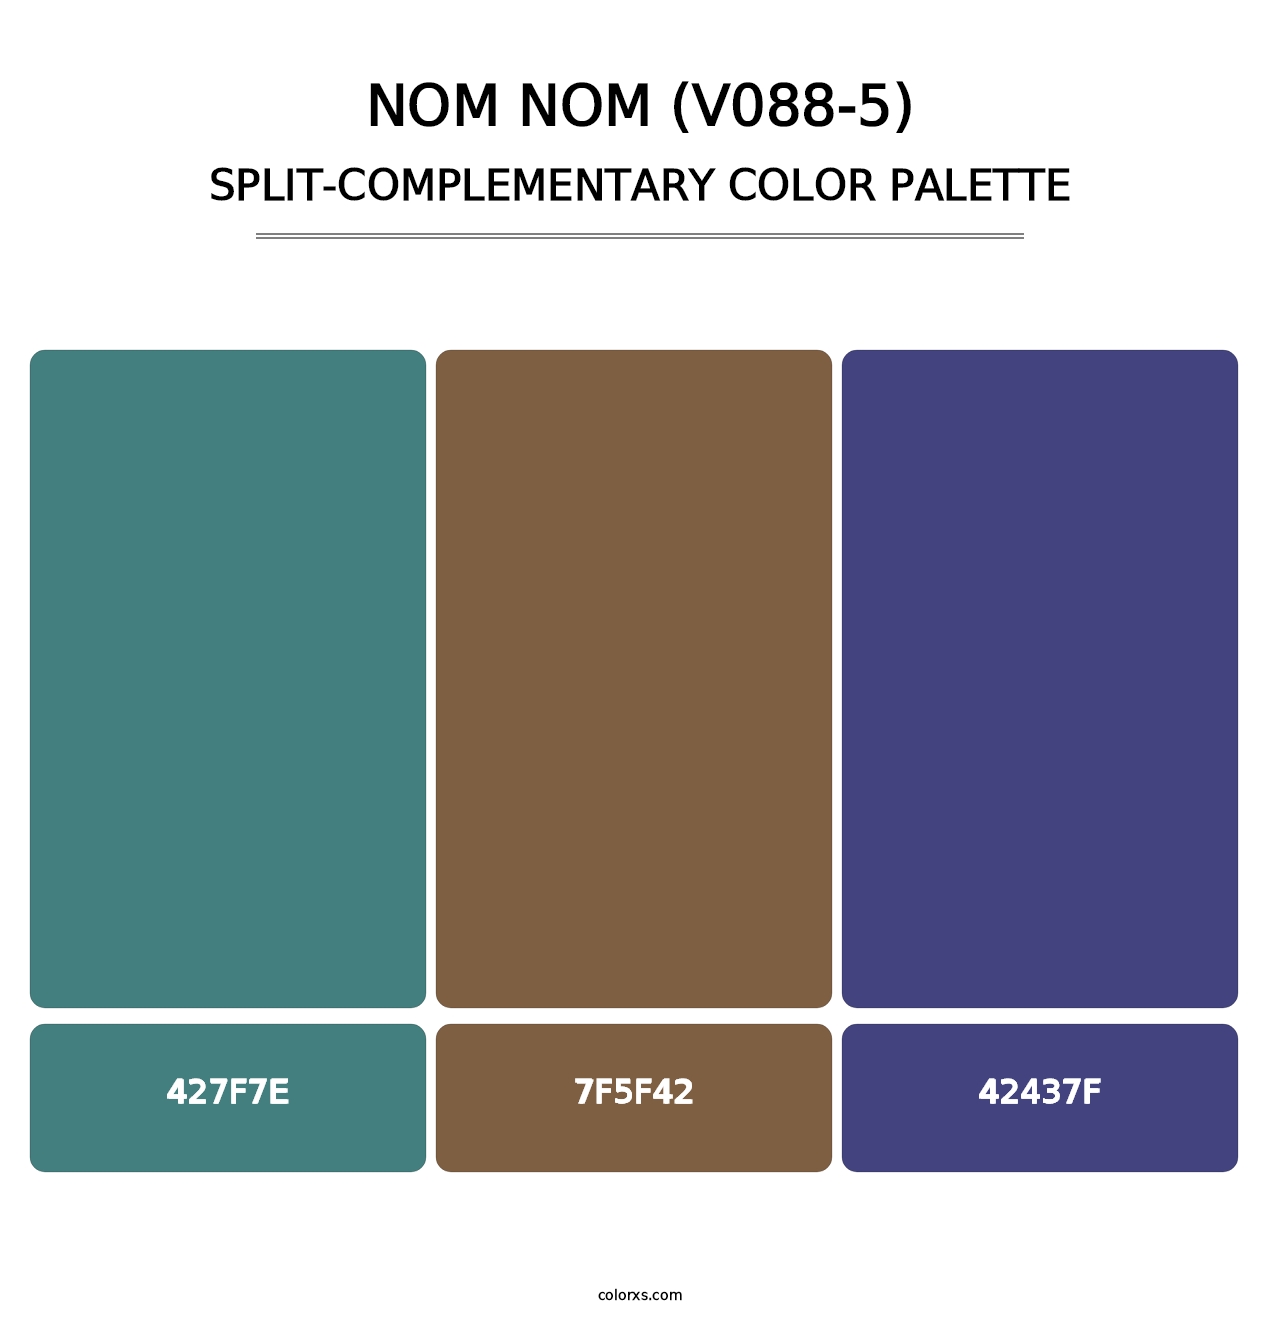 Nom Nom (V088-5) - Split-Complementary Color Palette